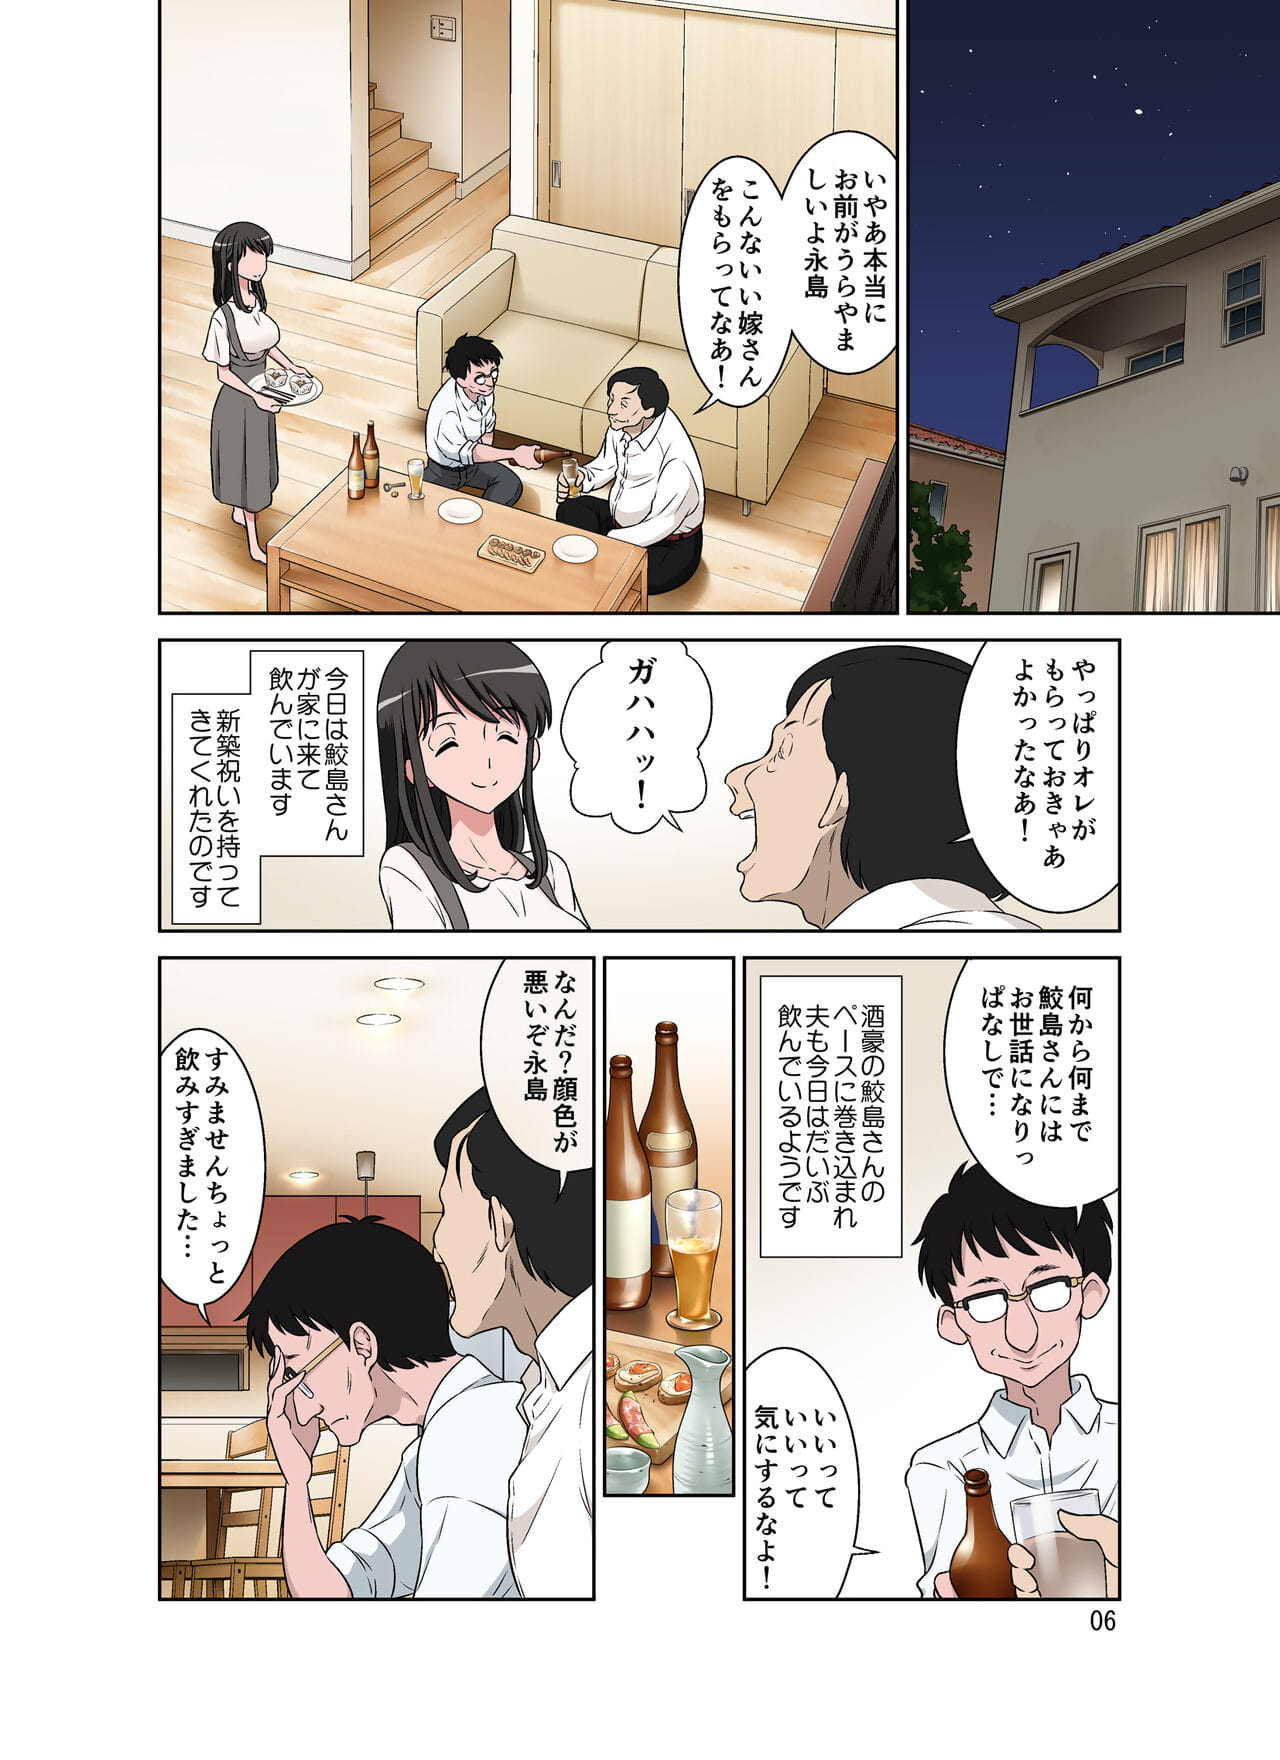 Samejima Shachou wa Keisanpu ga Osuki page 1